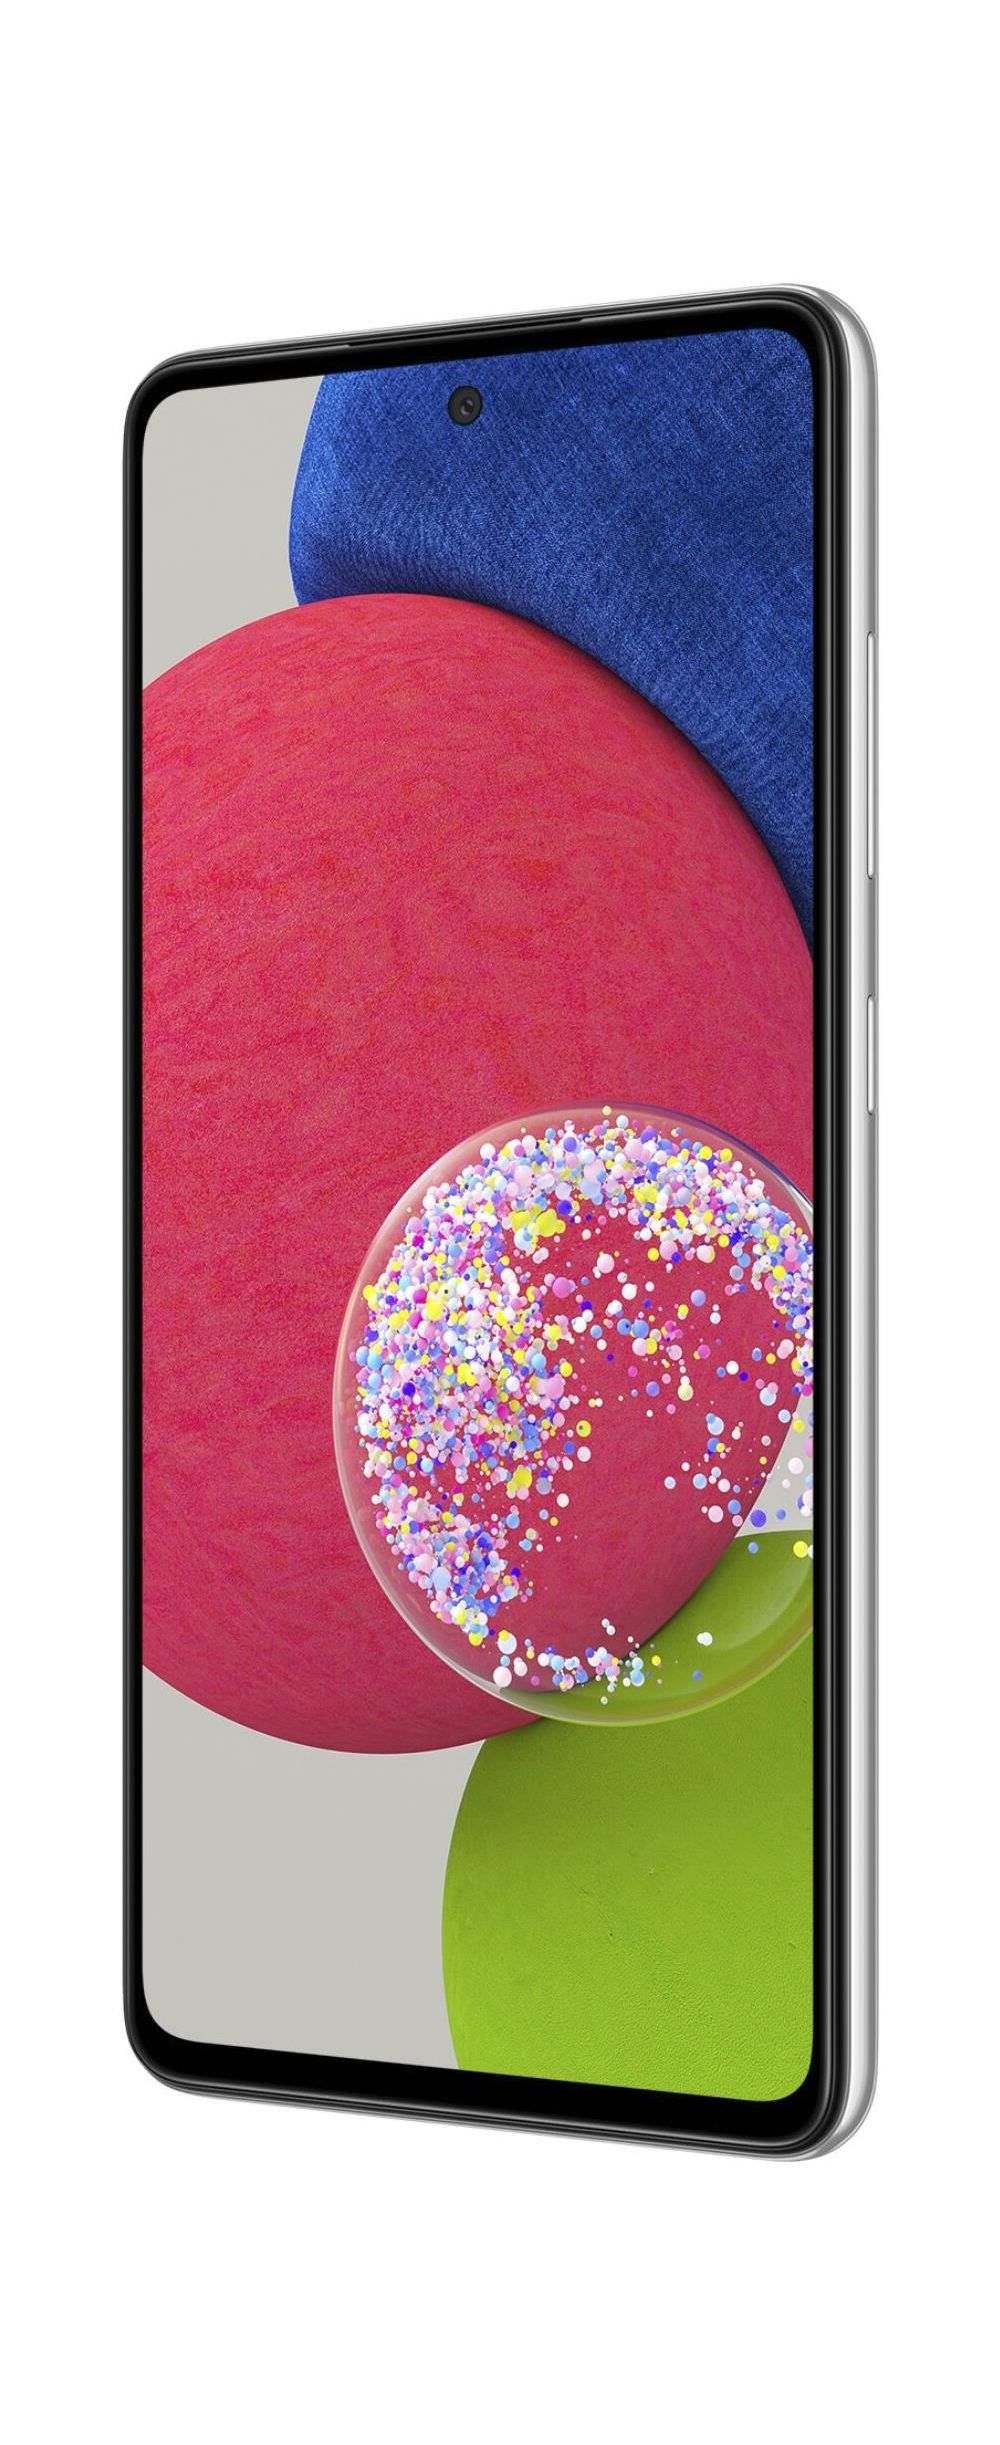 Samsung Galaxy A52s 5G A528B Dual-SIM 256GB, Android, weiß